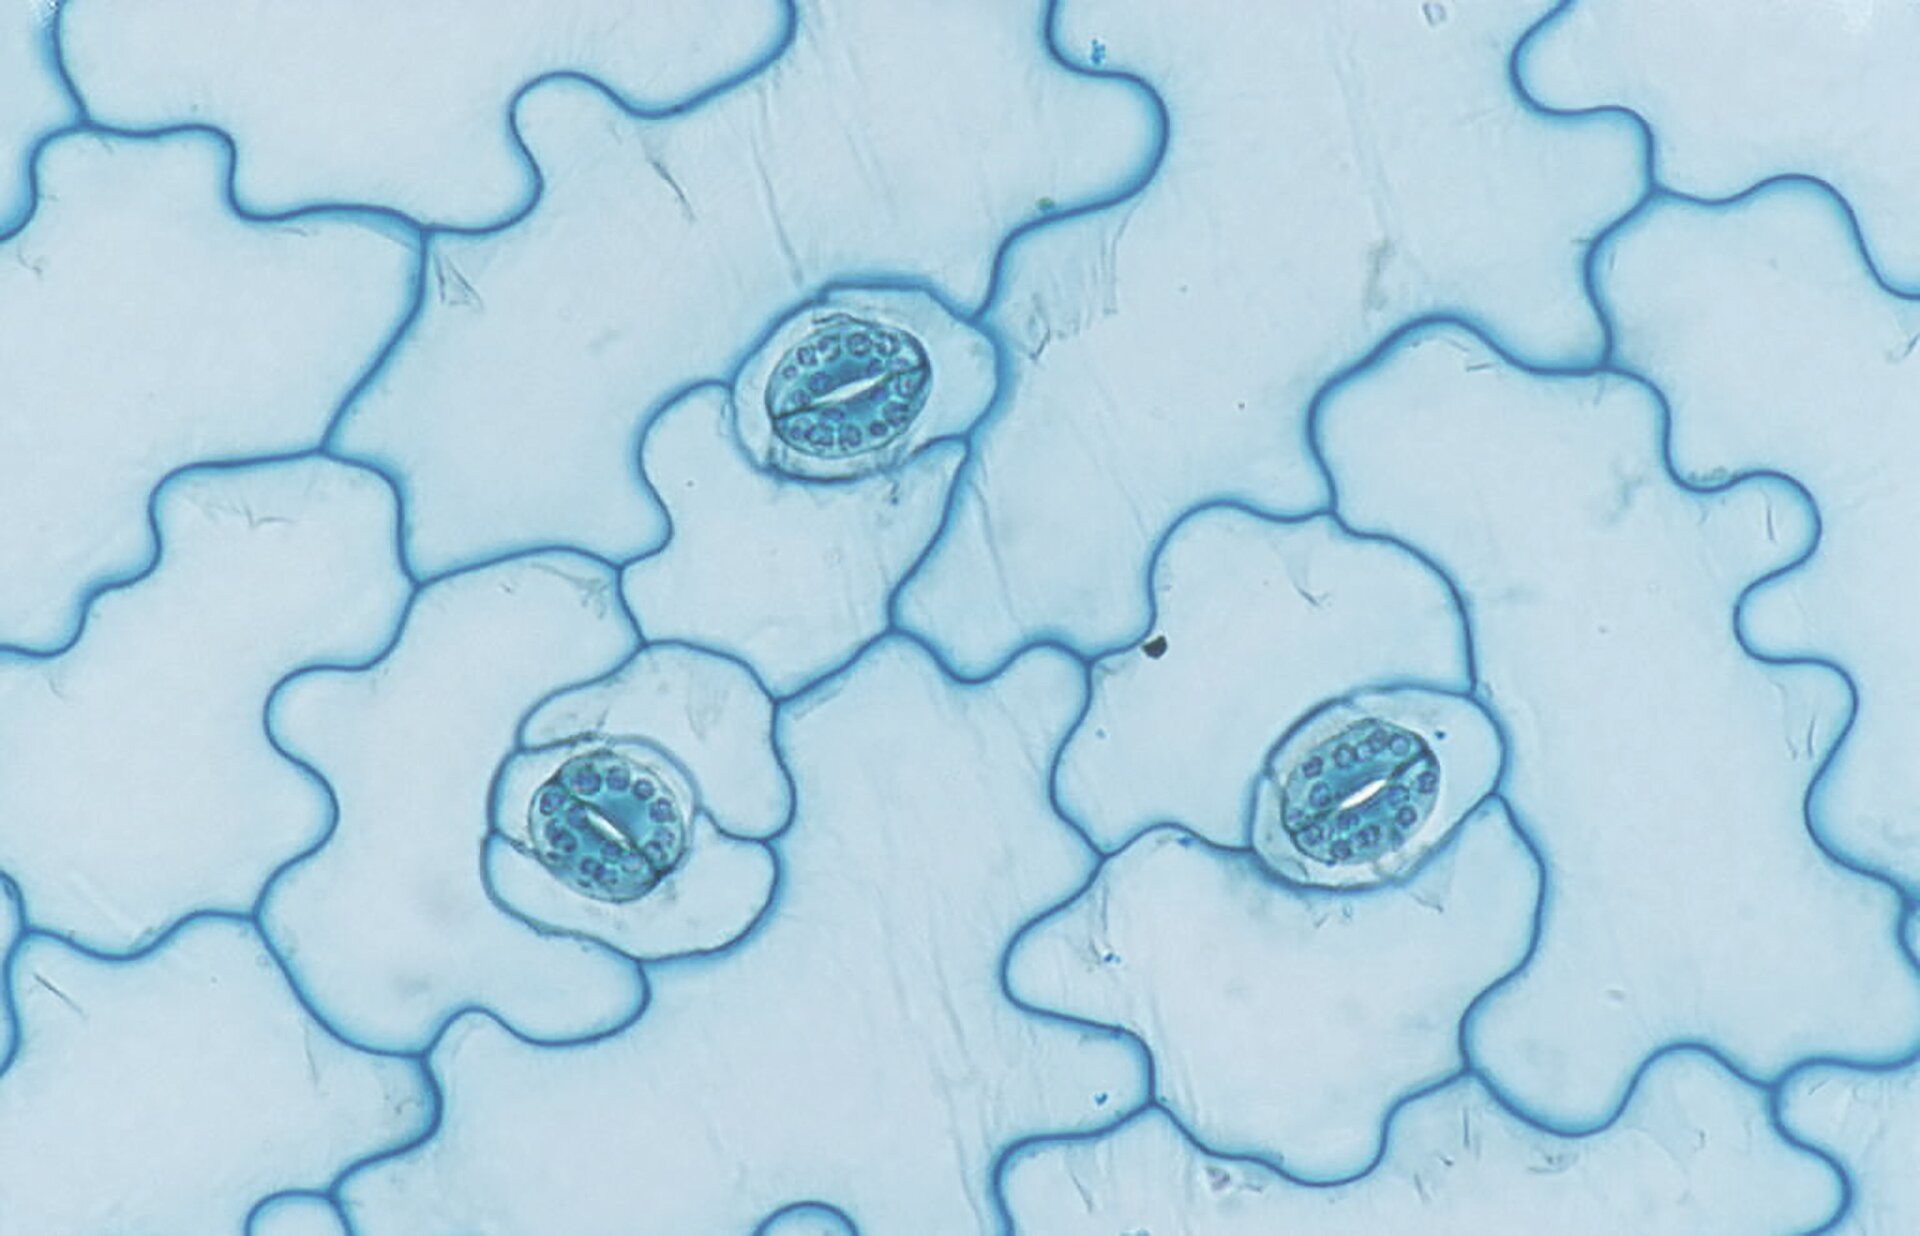 Fotografia mikroskopowa przedstawia komórki o falistych brzegach, z dolnej skórki liścia. Między nimi znajdują się owalne aparaty szparkowe. Każdy składa się z dwóch połączonych końcami, pałeczkowatych komórek z ziarnistościami.